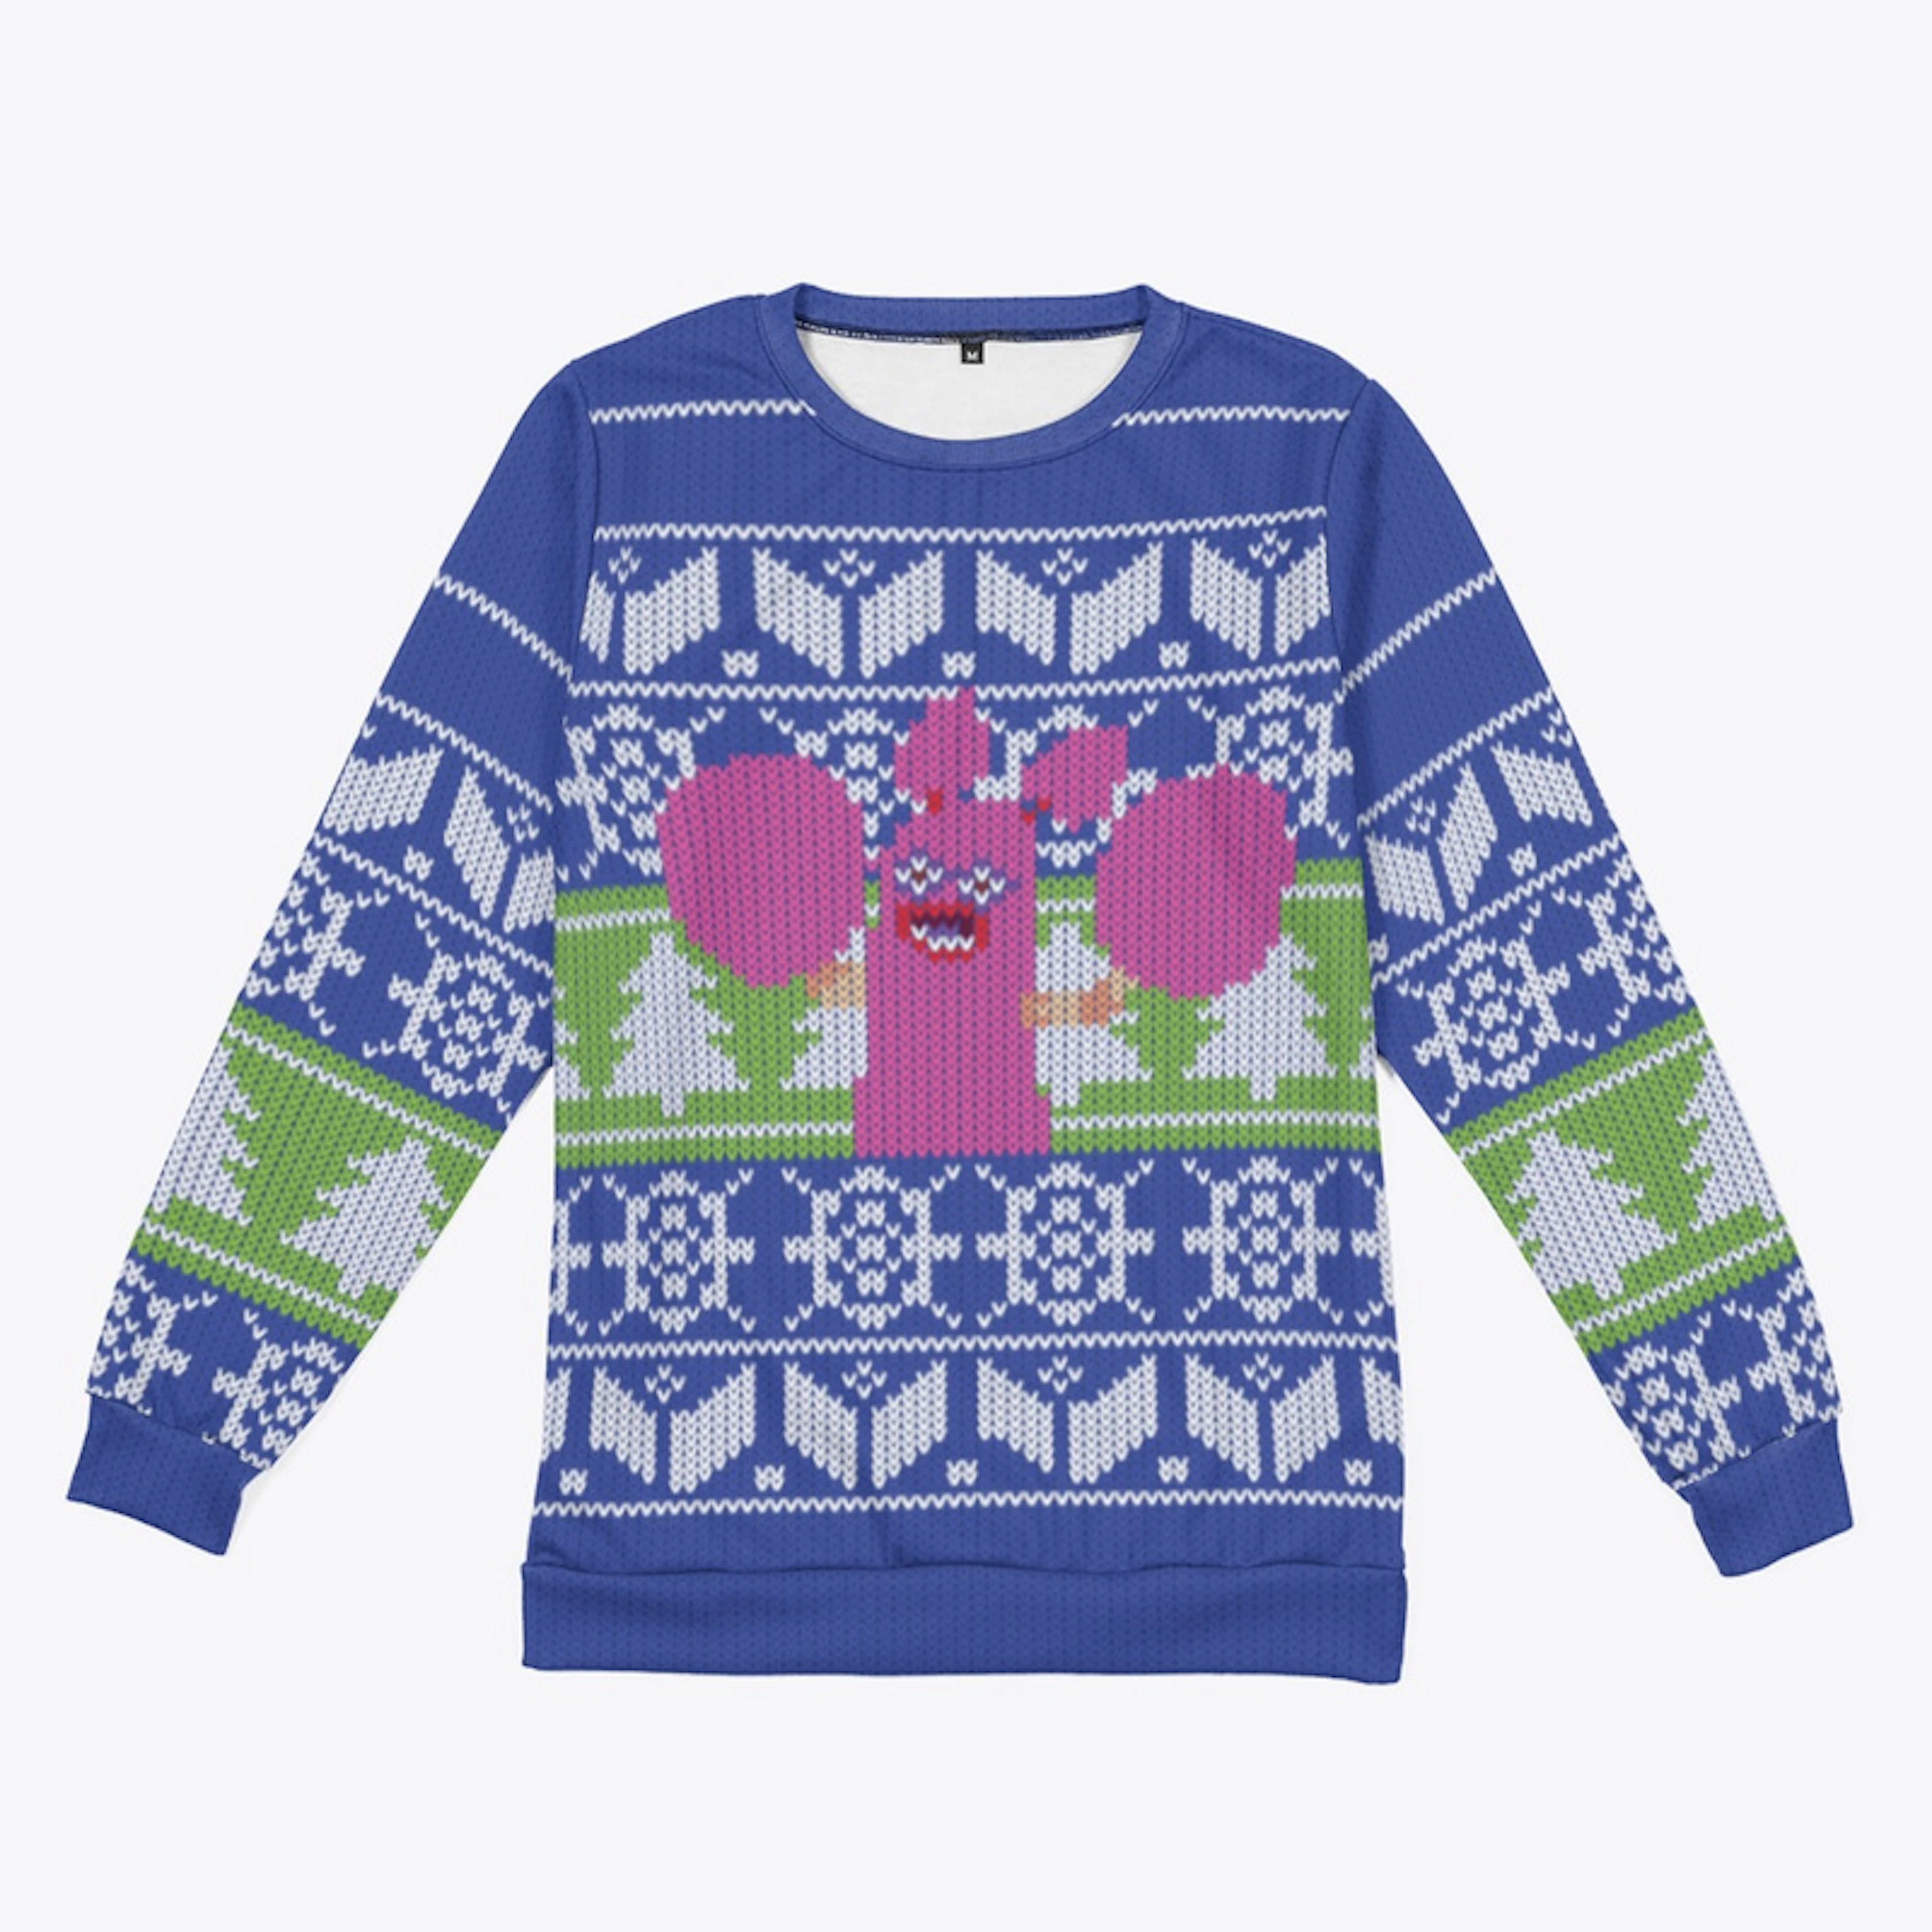 Pom Pom Holiday Sweater